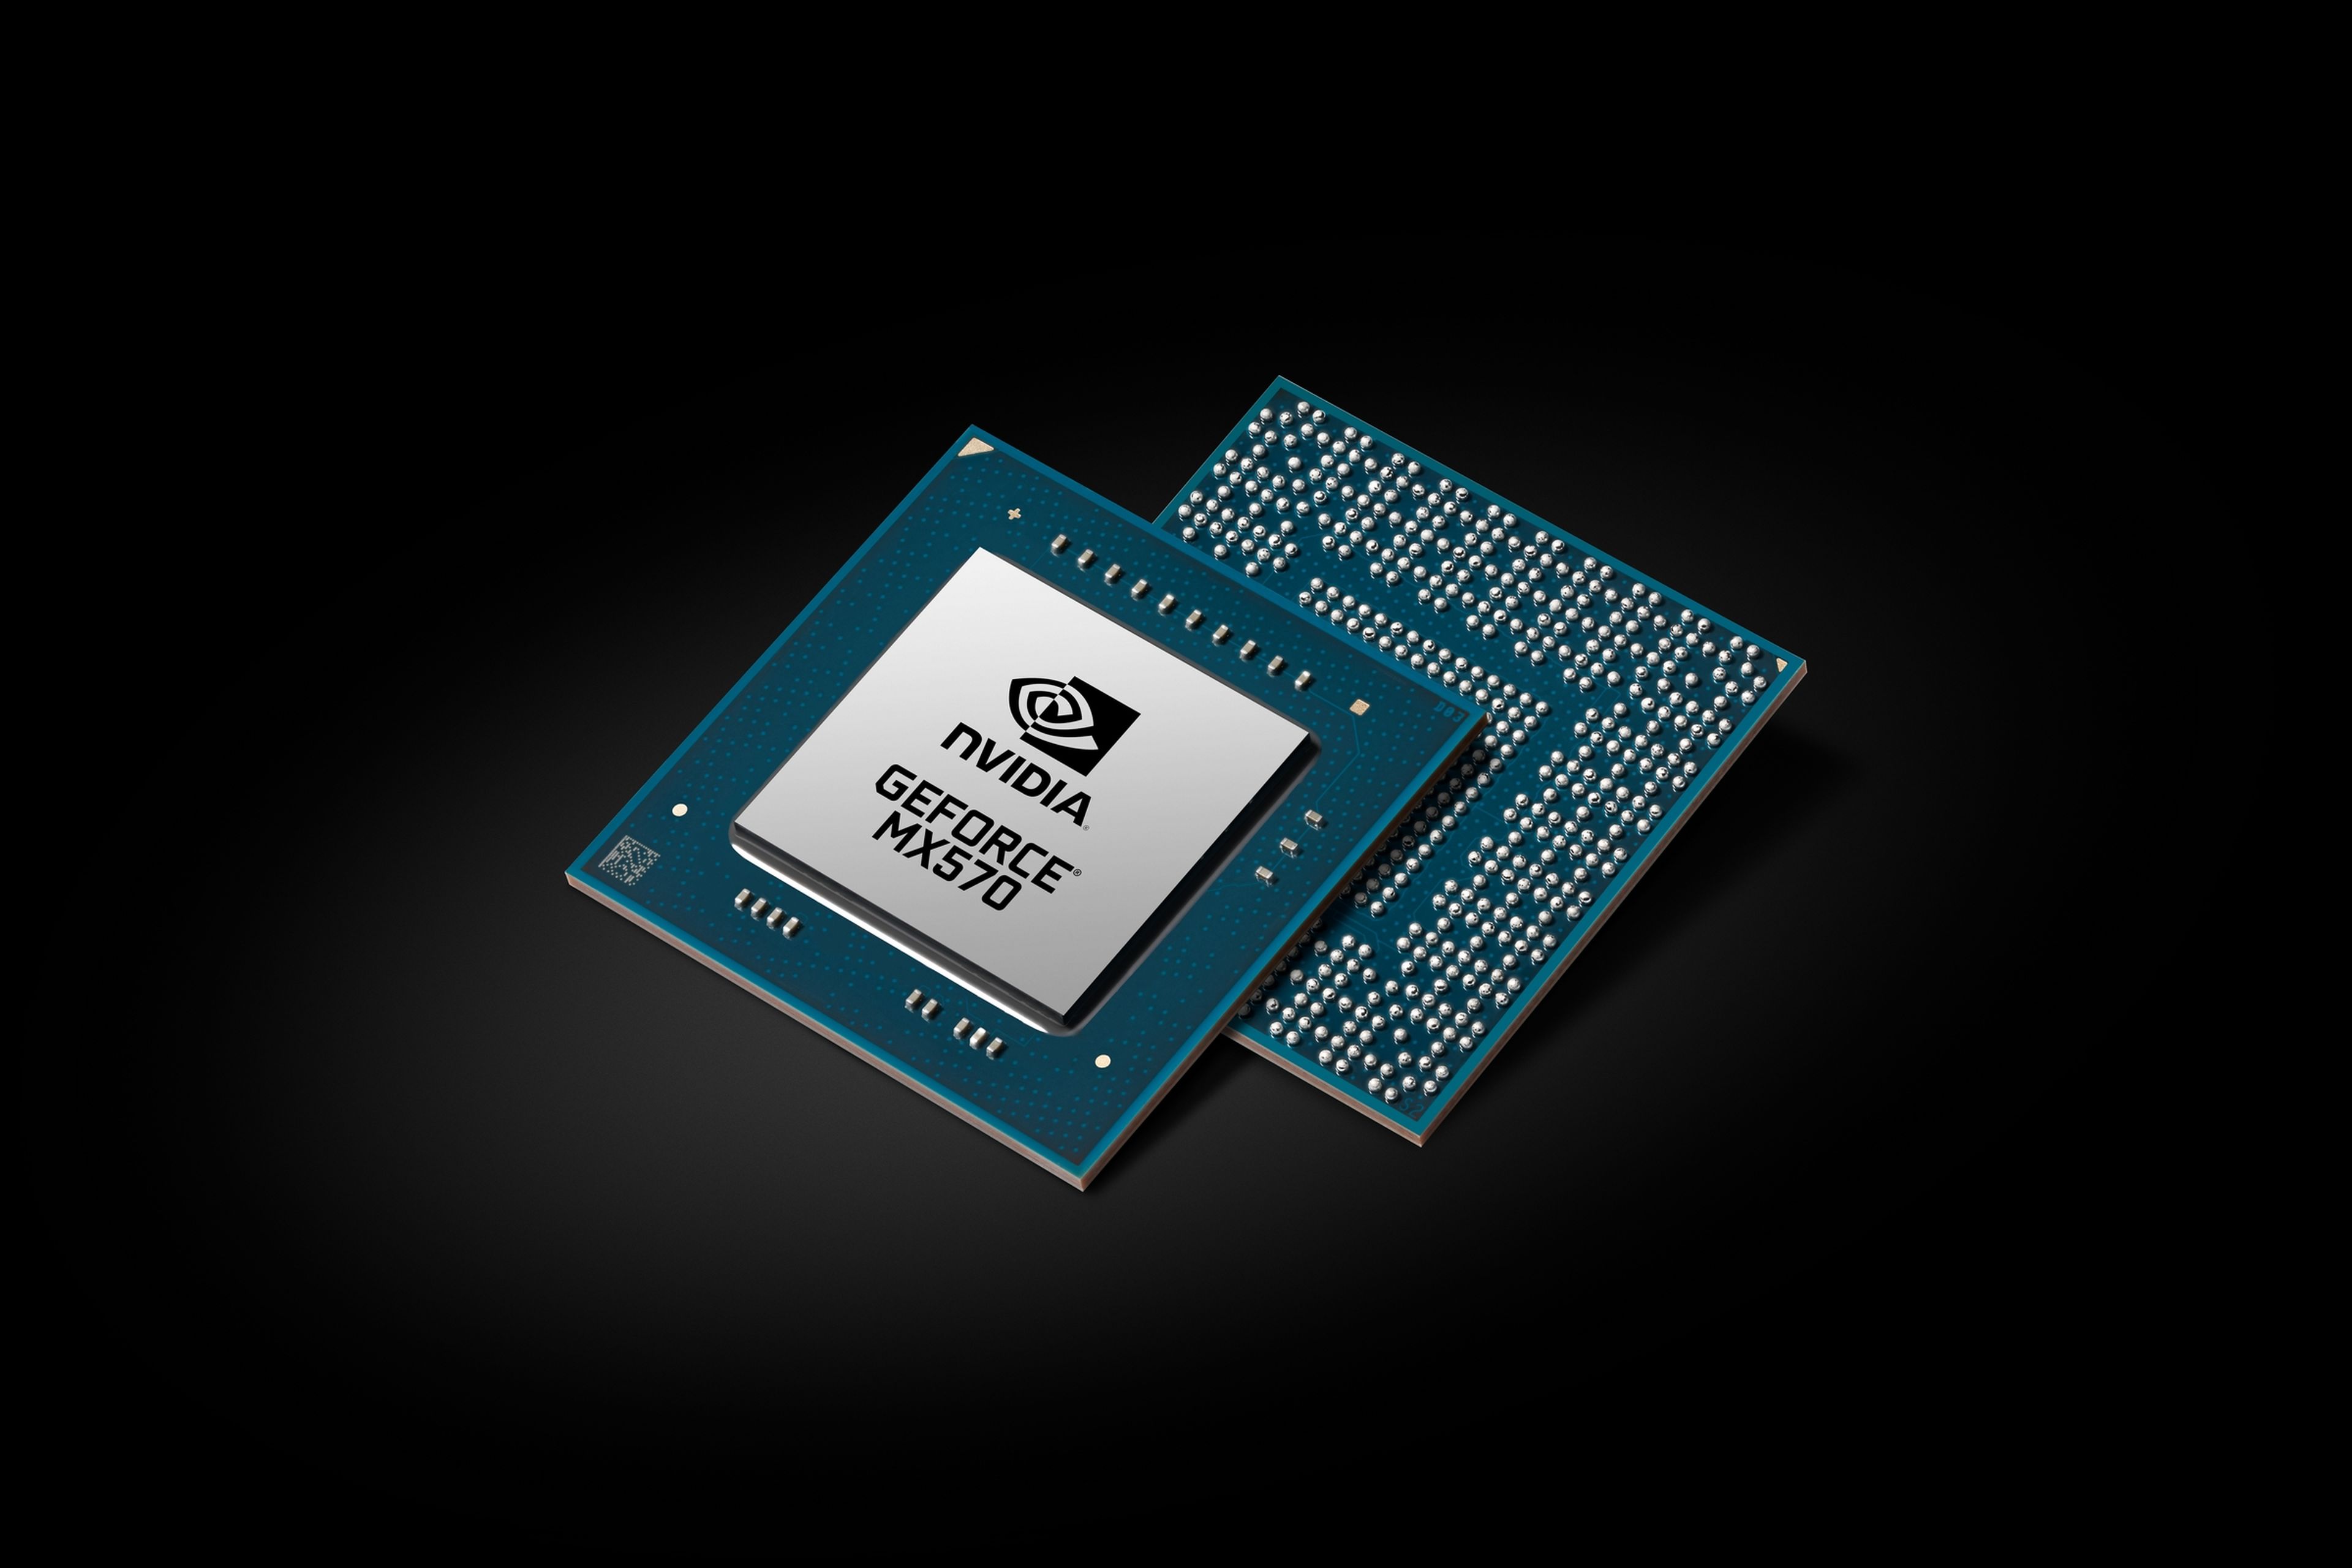 NVIDIA presenta nuevos chips gráficos RTX y MX para portátiles